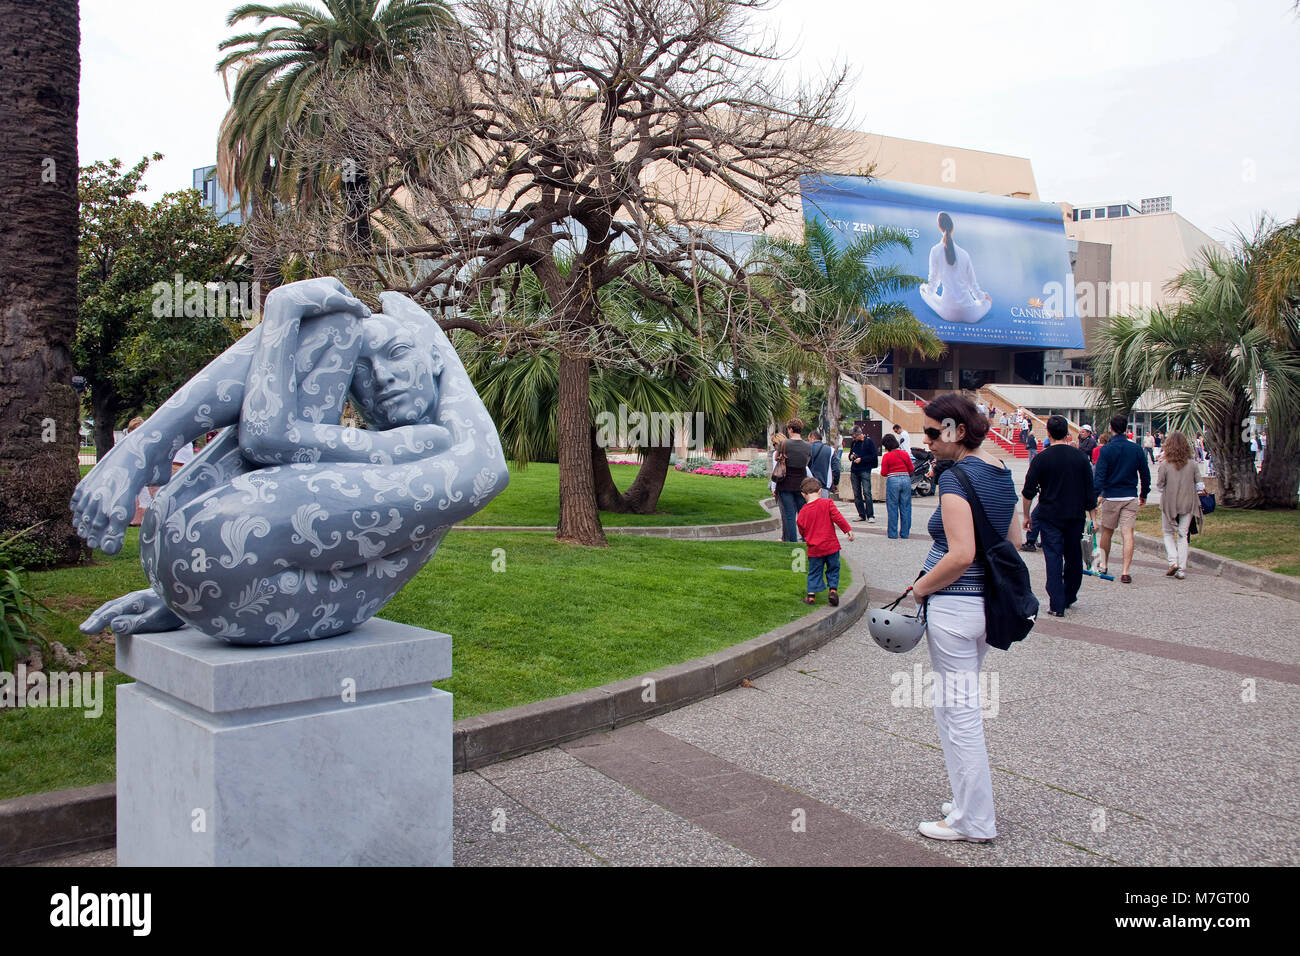 Sculpture de Rabarama Paola Epifani au Palais des Festivals et des Congrès de Cannes, Boulevard de La Croisette, Cannes, Côte d'Azur, France, Europe Banque D'Images